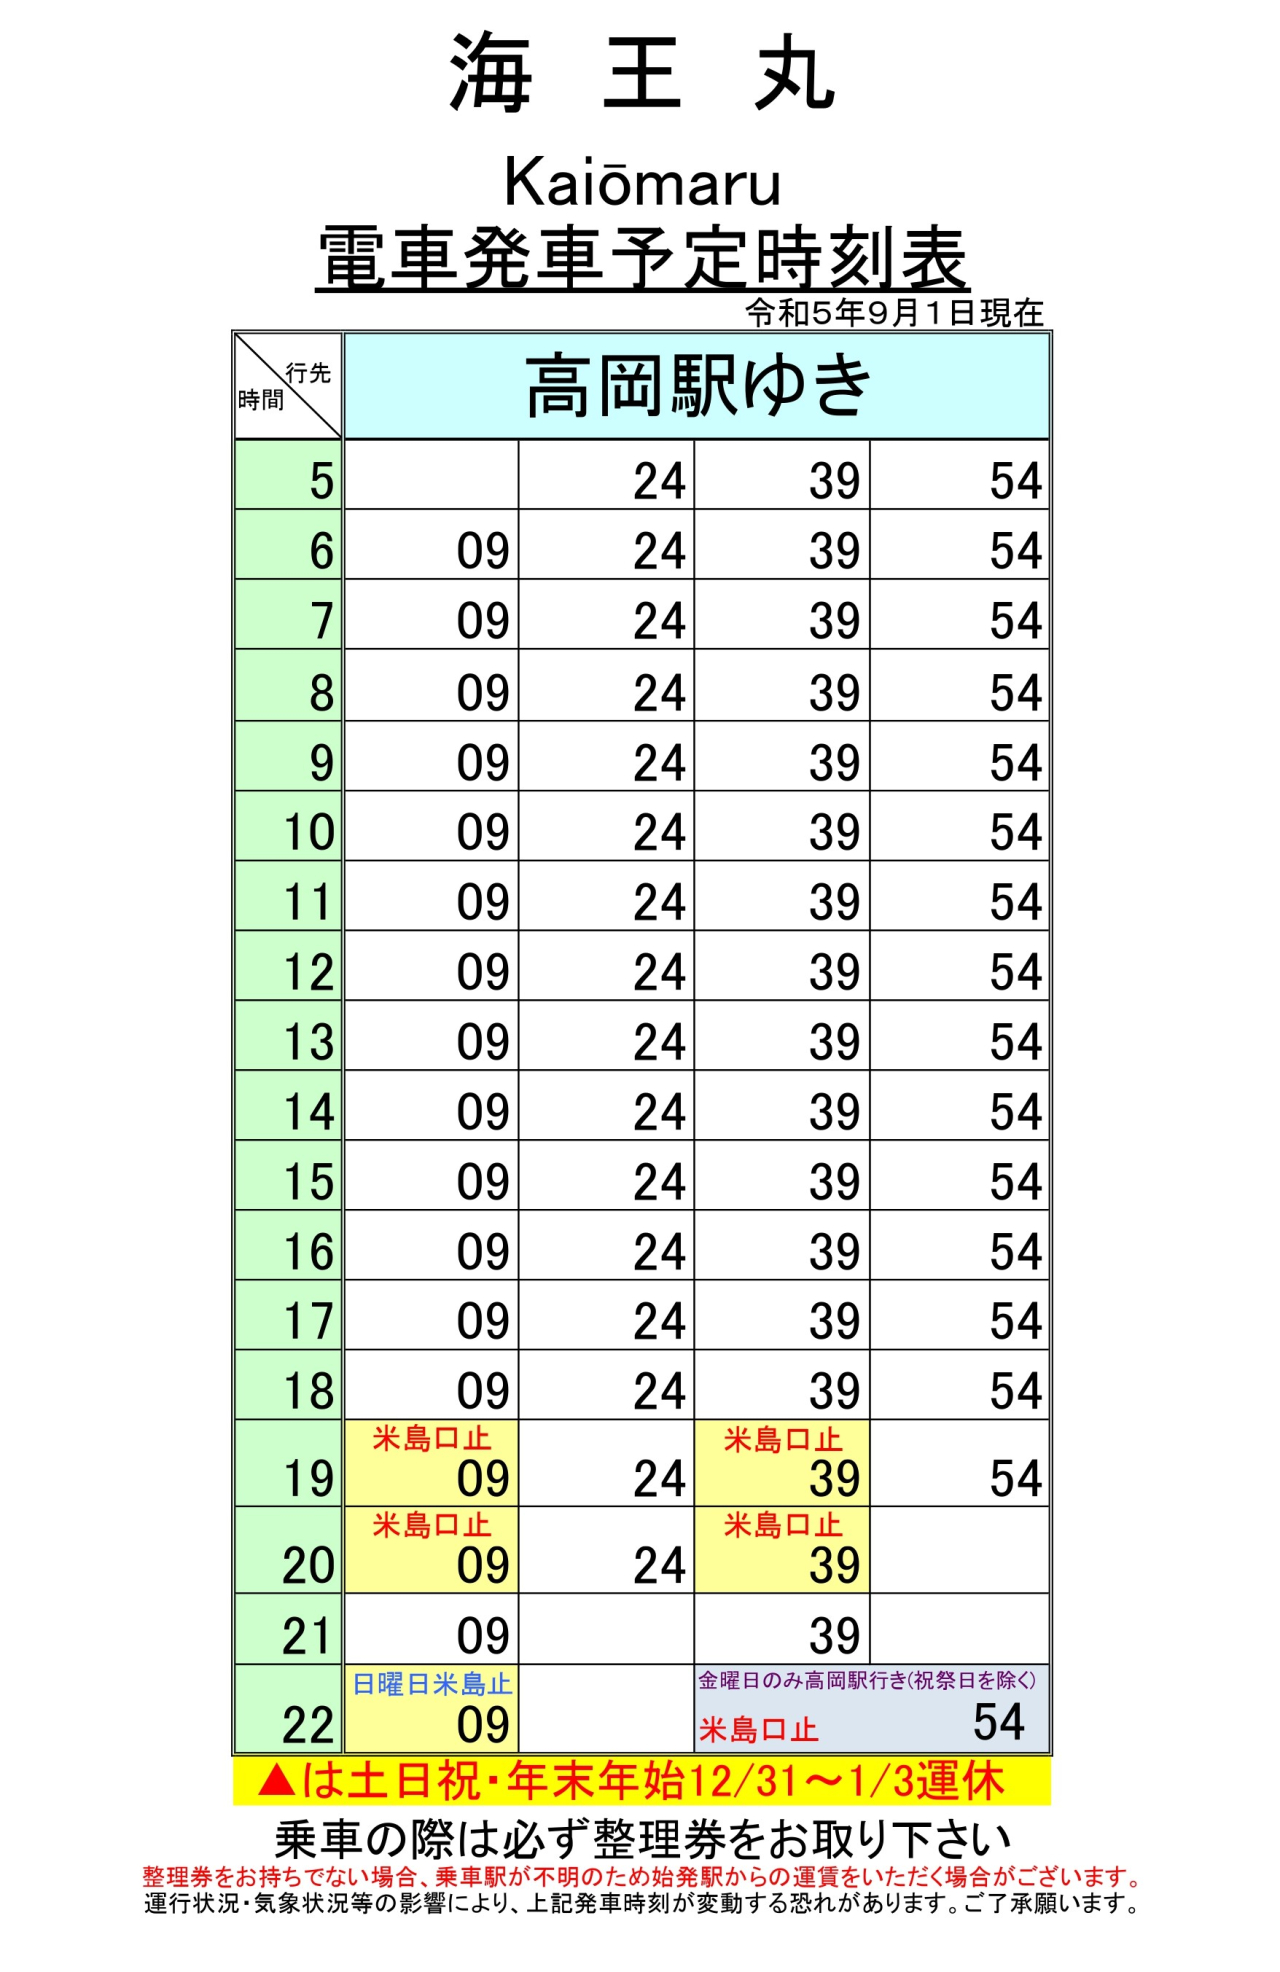 最新5.5.1改正各駅時刻表(海王丸)_page-0001 (1)